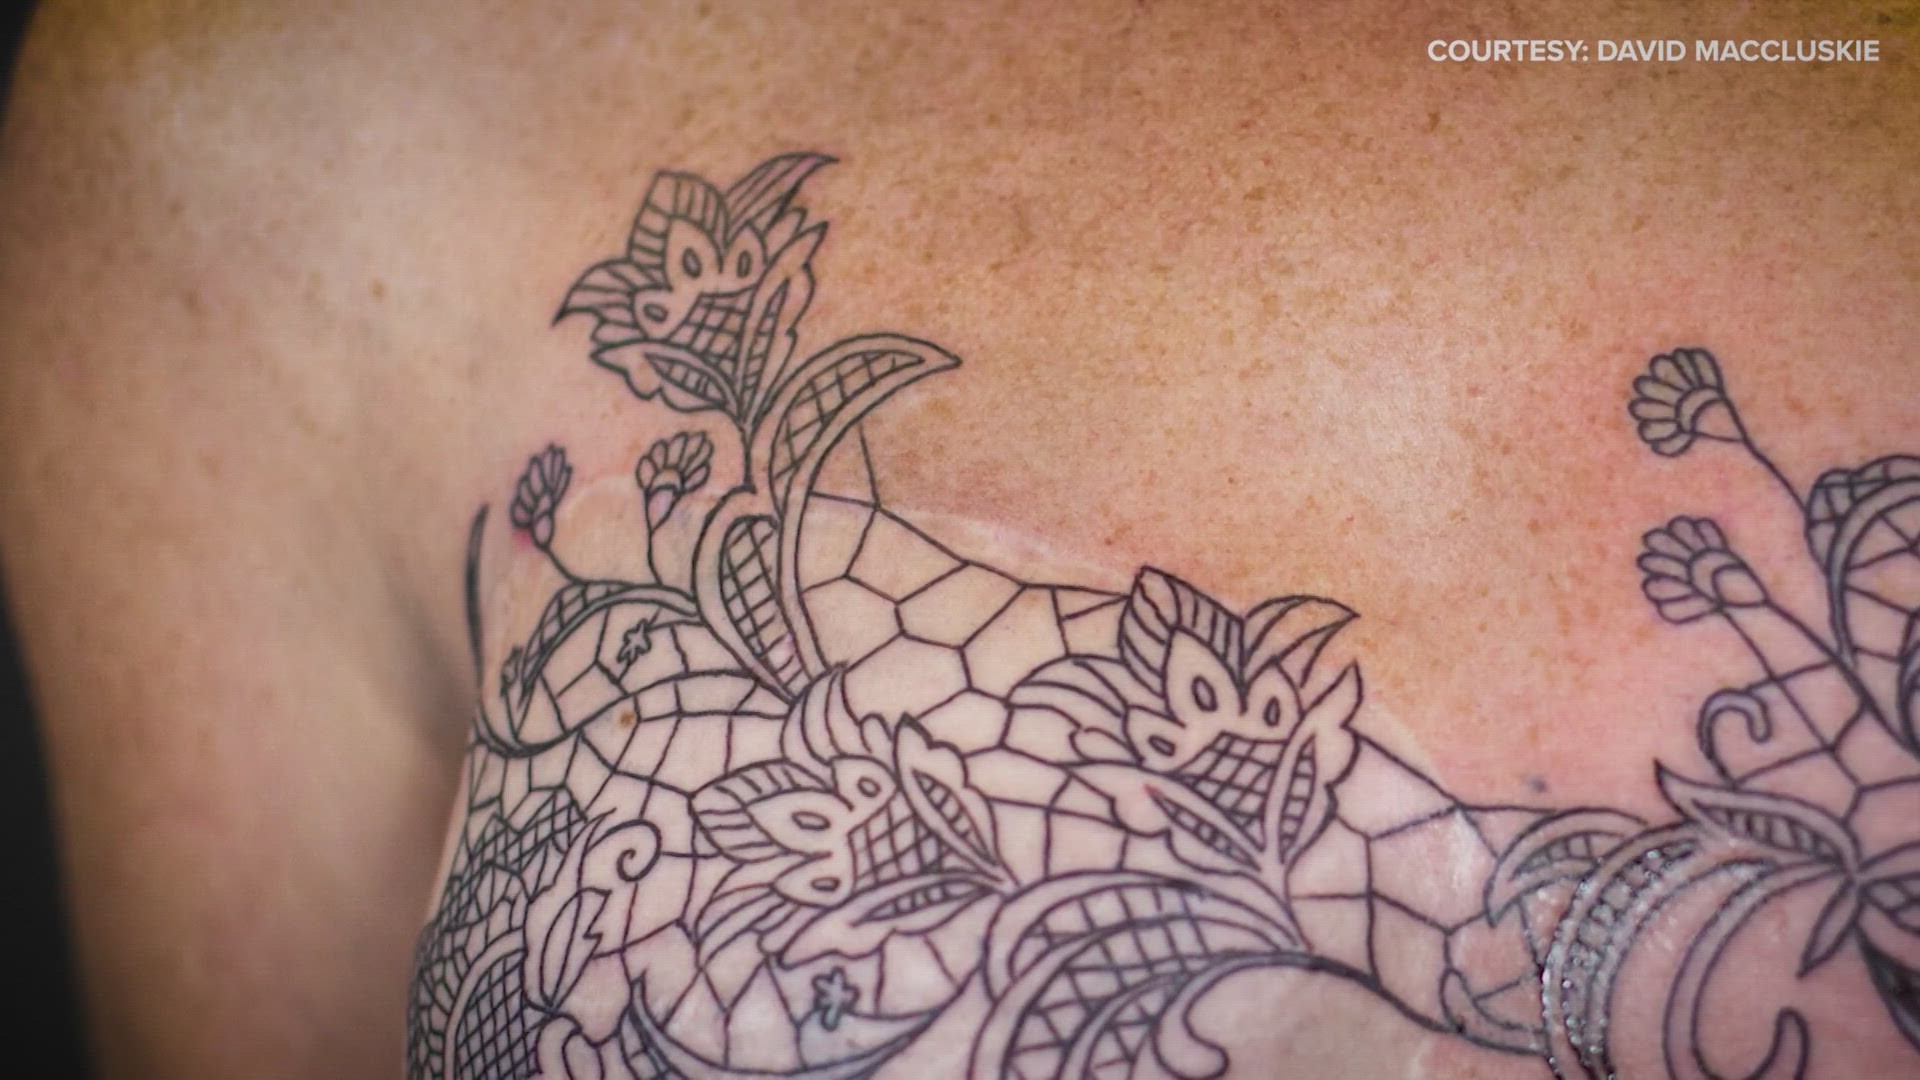 Blackberry branch tattoo | Body tattoos, Body art tattoos, Pretty tattoos